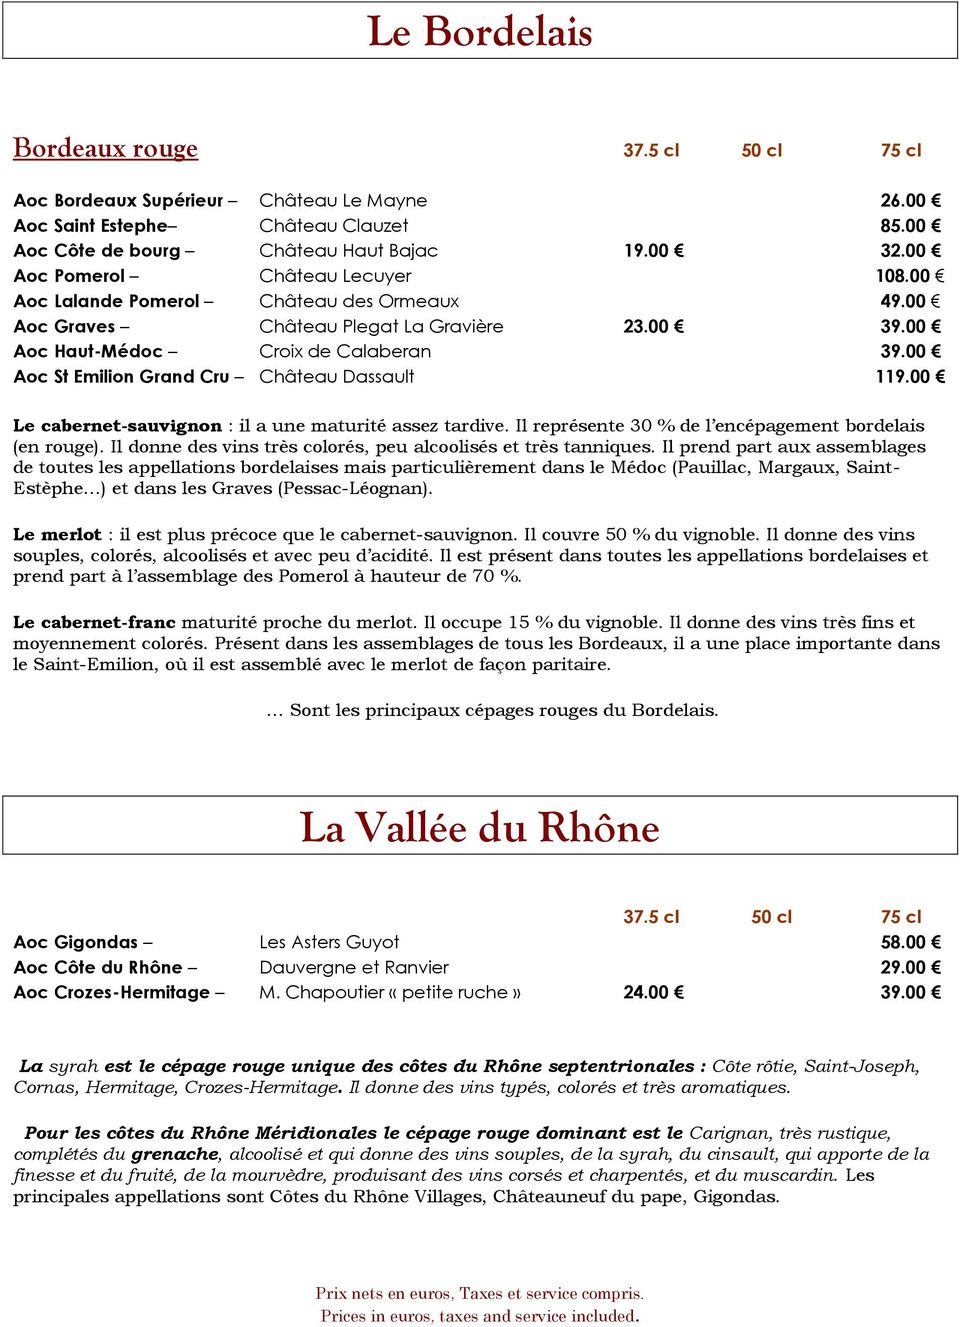 00 Aoc St Emilion Grand Cru Château Dassault 119.00 Le cabernet-sauvignon : il a une maturité assez tardive. Il représente 30 % de l encépagement bordelais (en rouge).